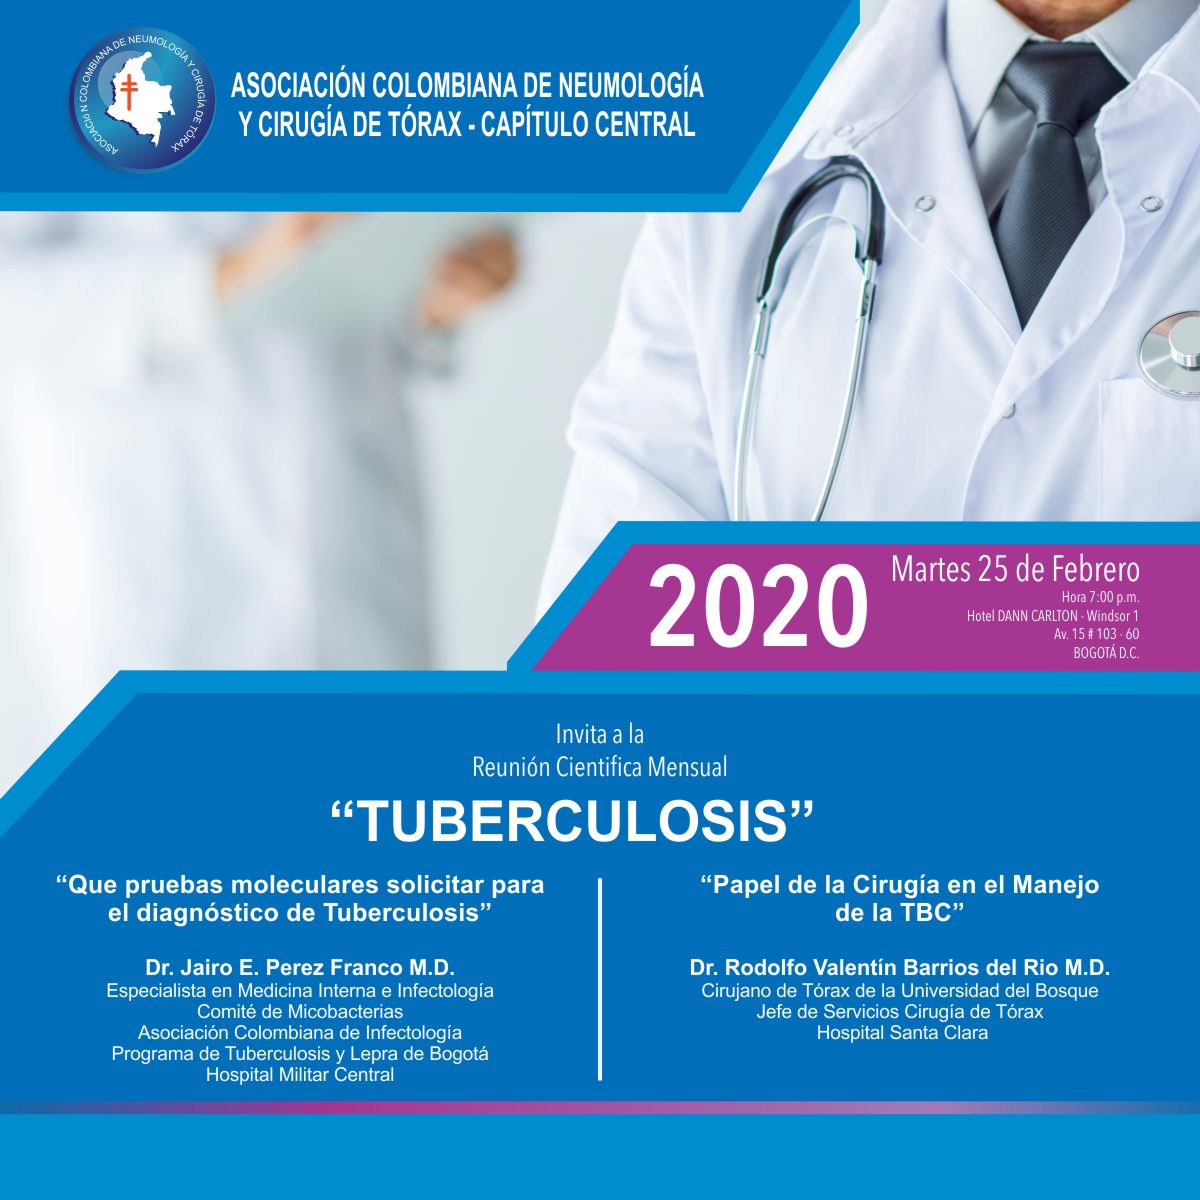 Reunión Científica Mensual “Tuberculosis”